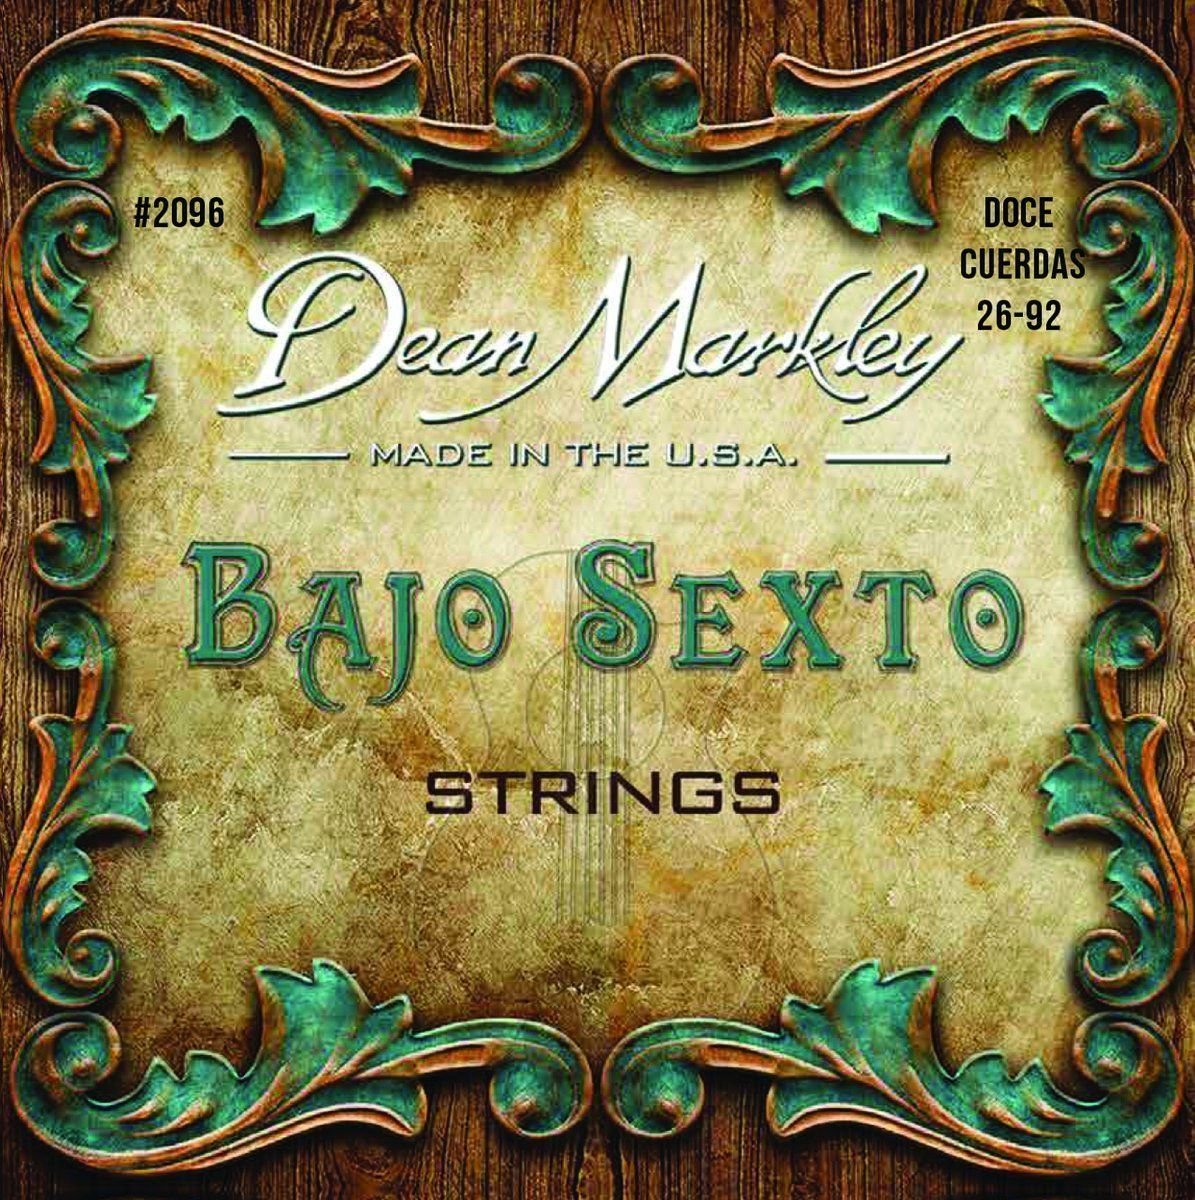 Banjo Strings Dean Markley 2096 Bajo Sexto